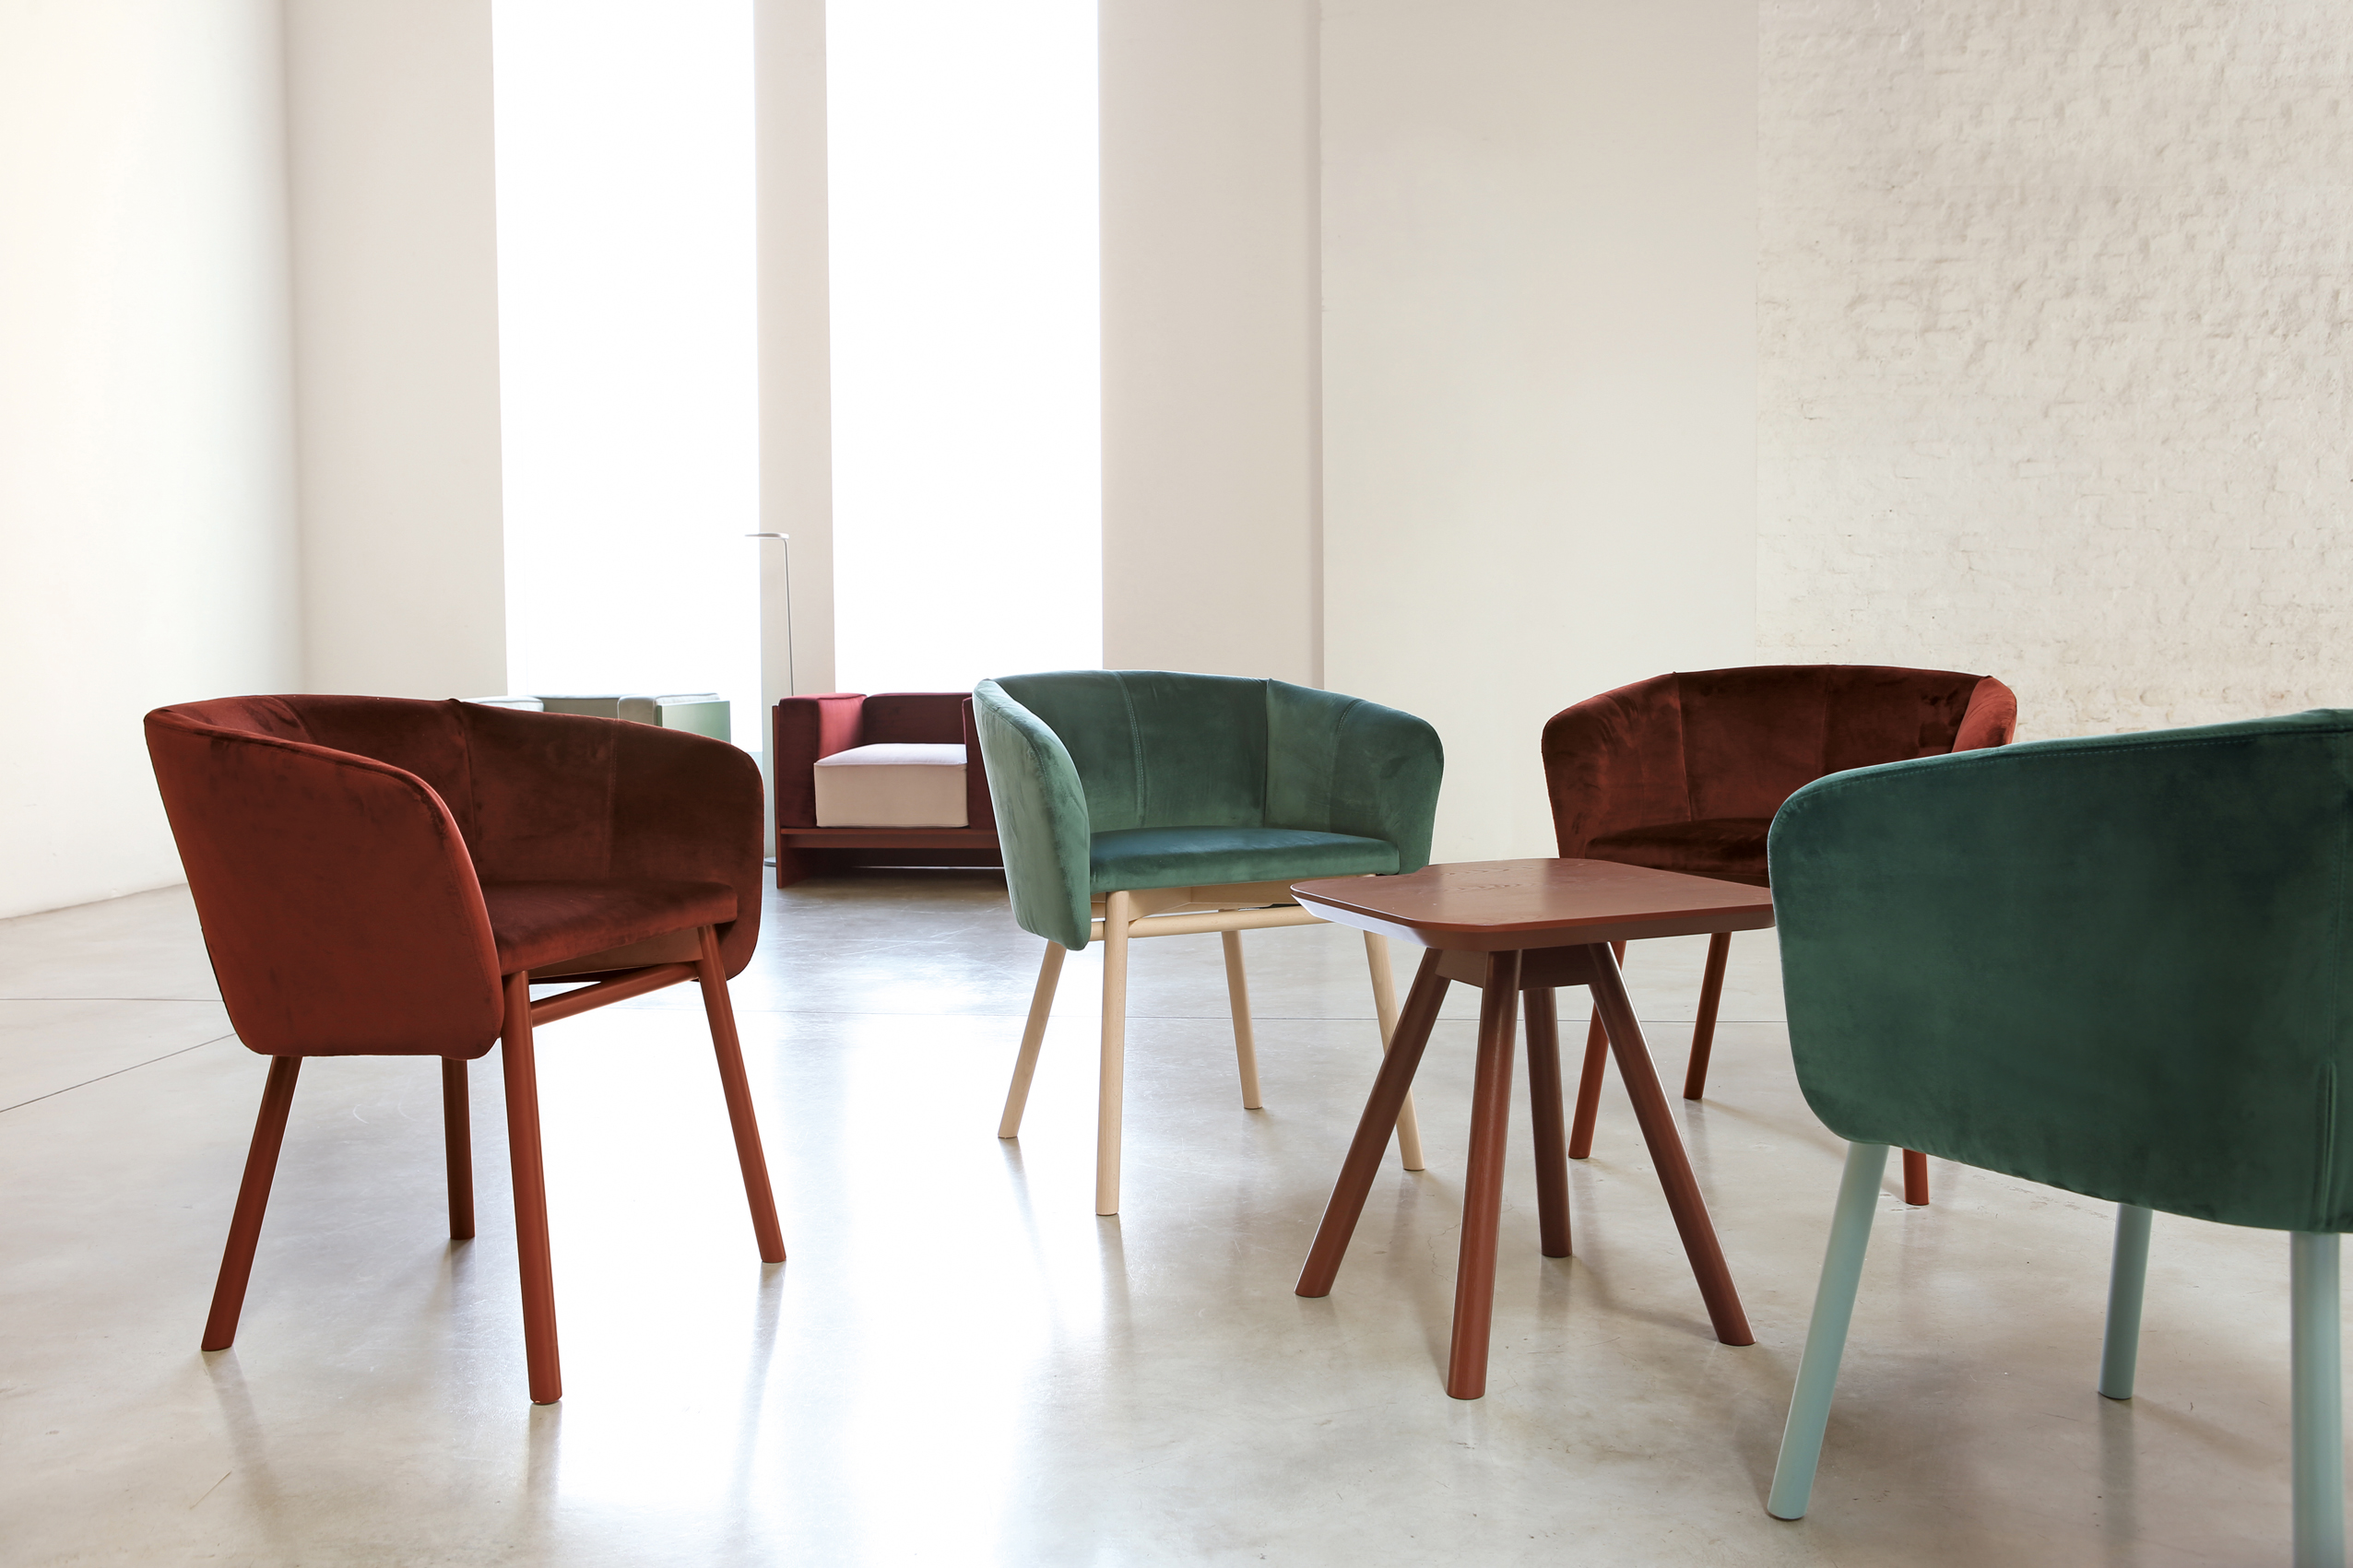 Balù Dining Chairs by Emilio Nanni for Trabà